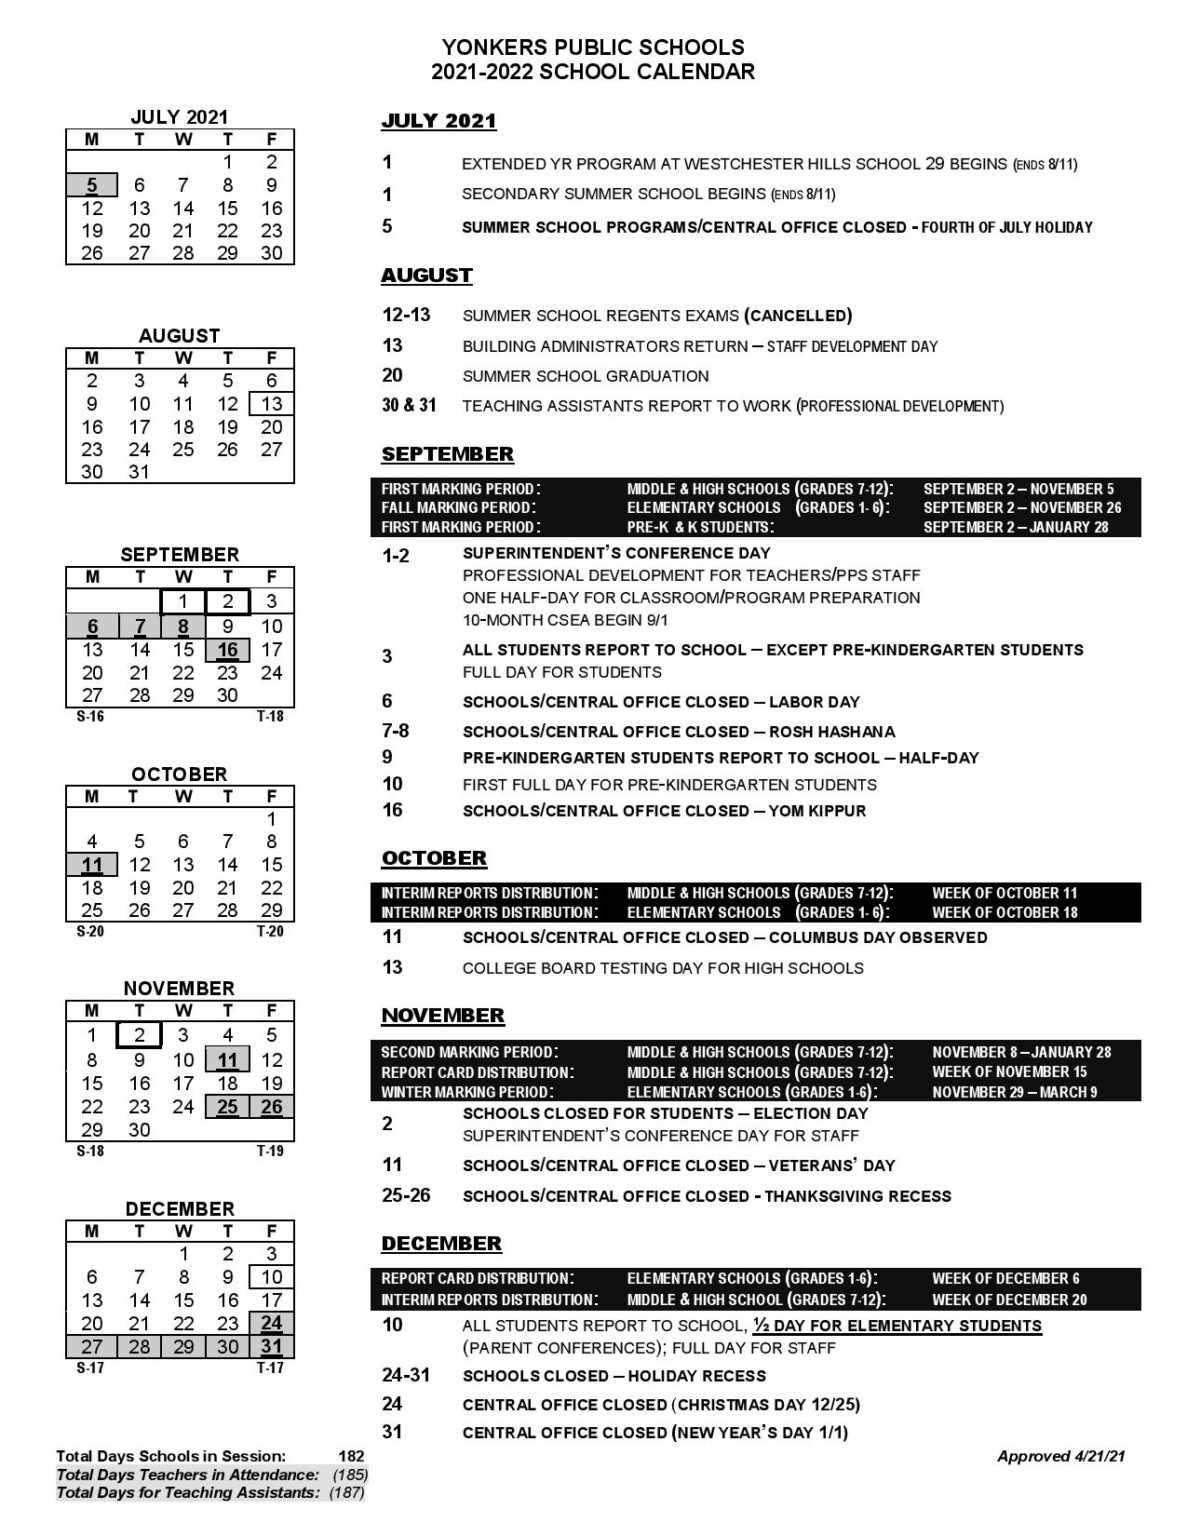 yonkers-public-schools-calendar-2021-2022-in-pdf